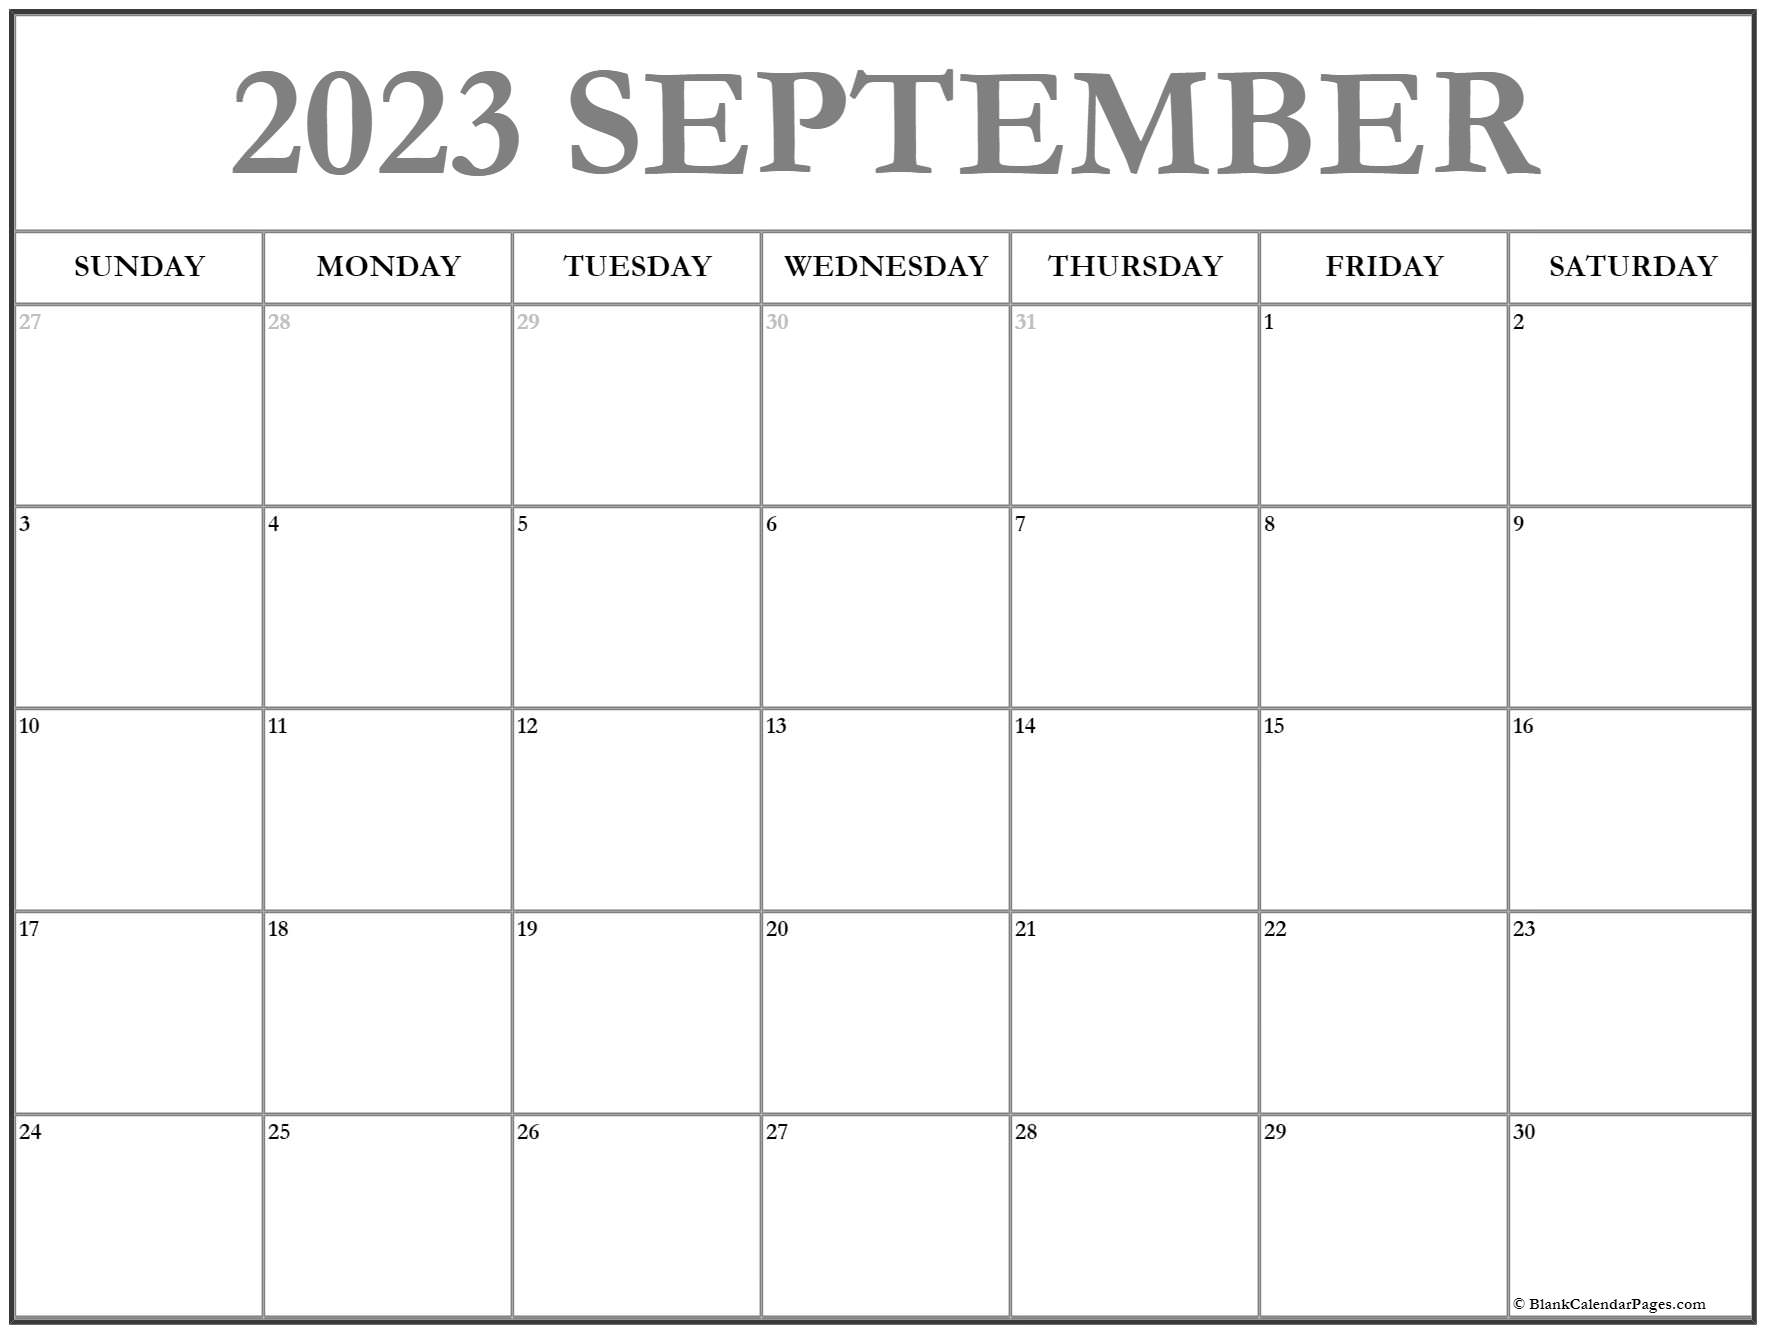 September 2023 Calendar Free Printable Calendar Collection Of 